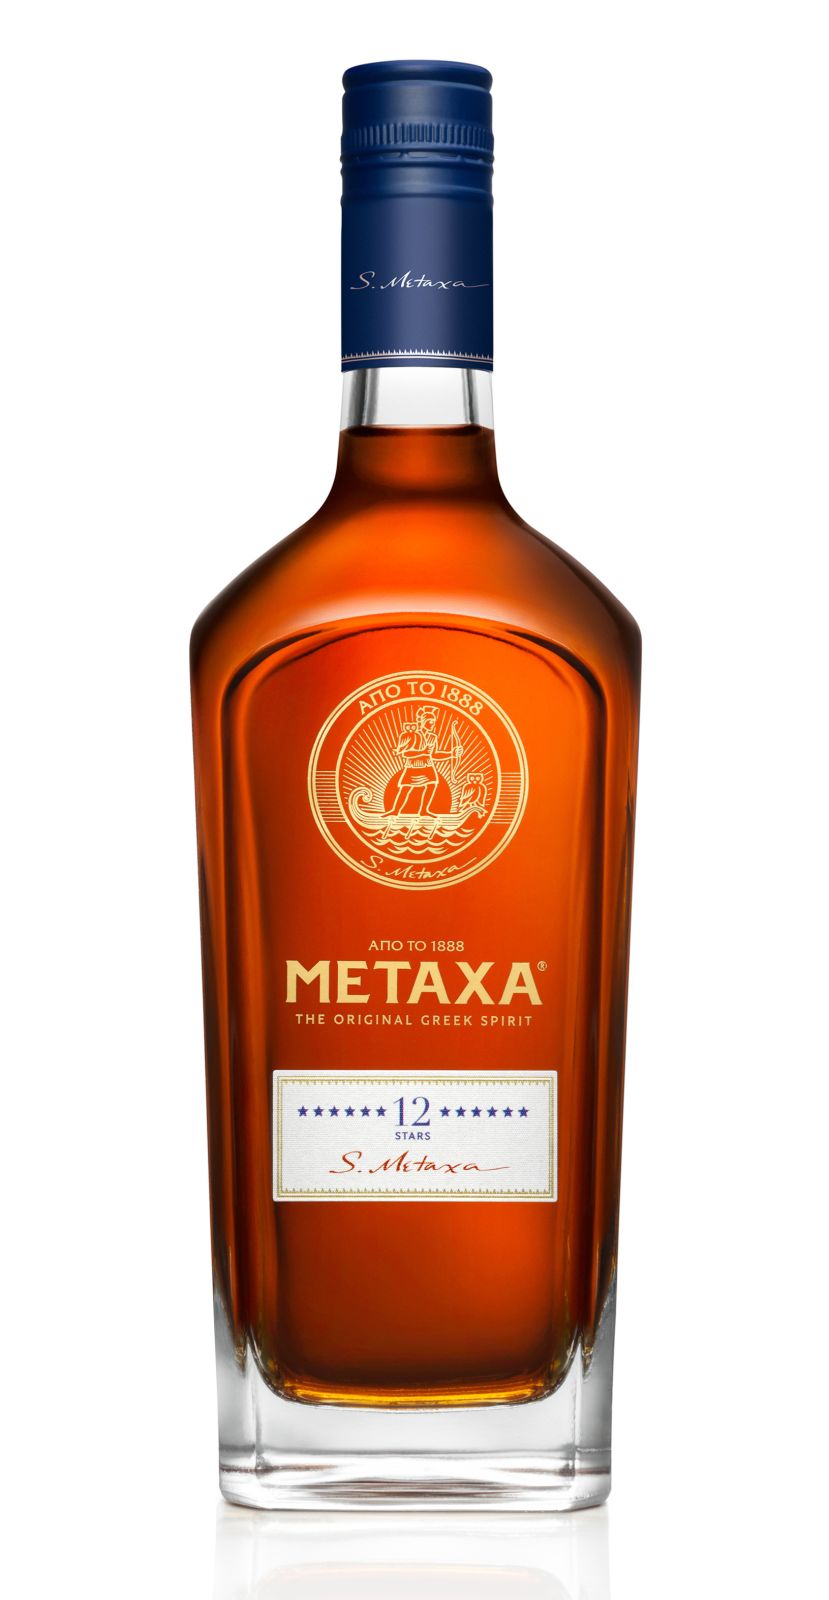 Jak chutná Metaxa?